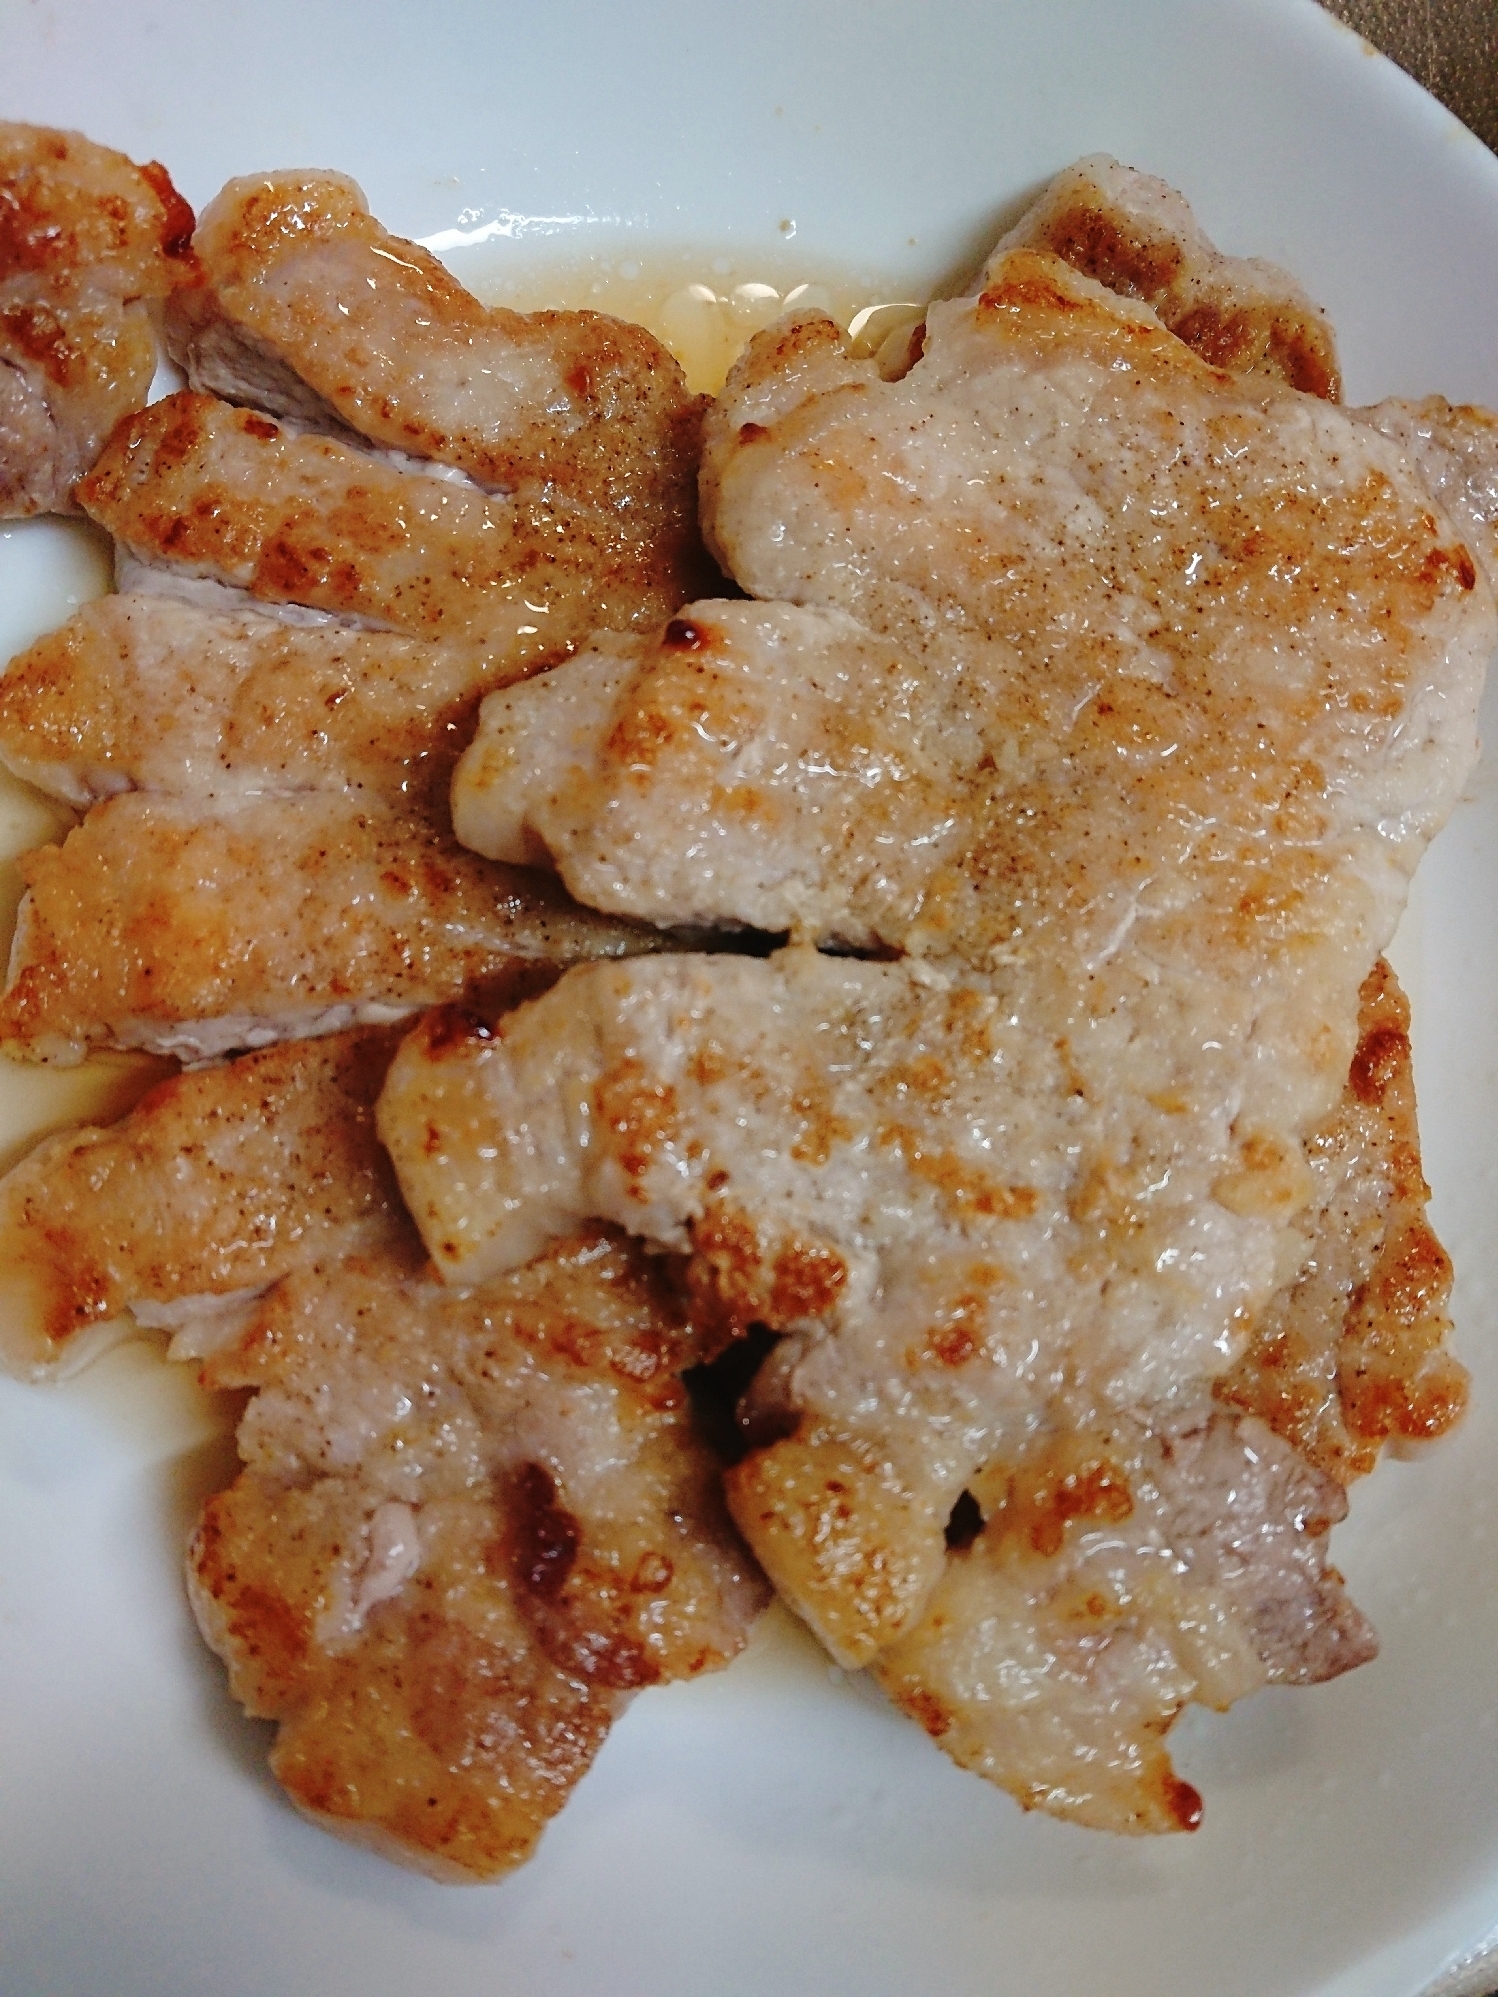 豚ロース肉の塩コショウ焼き